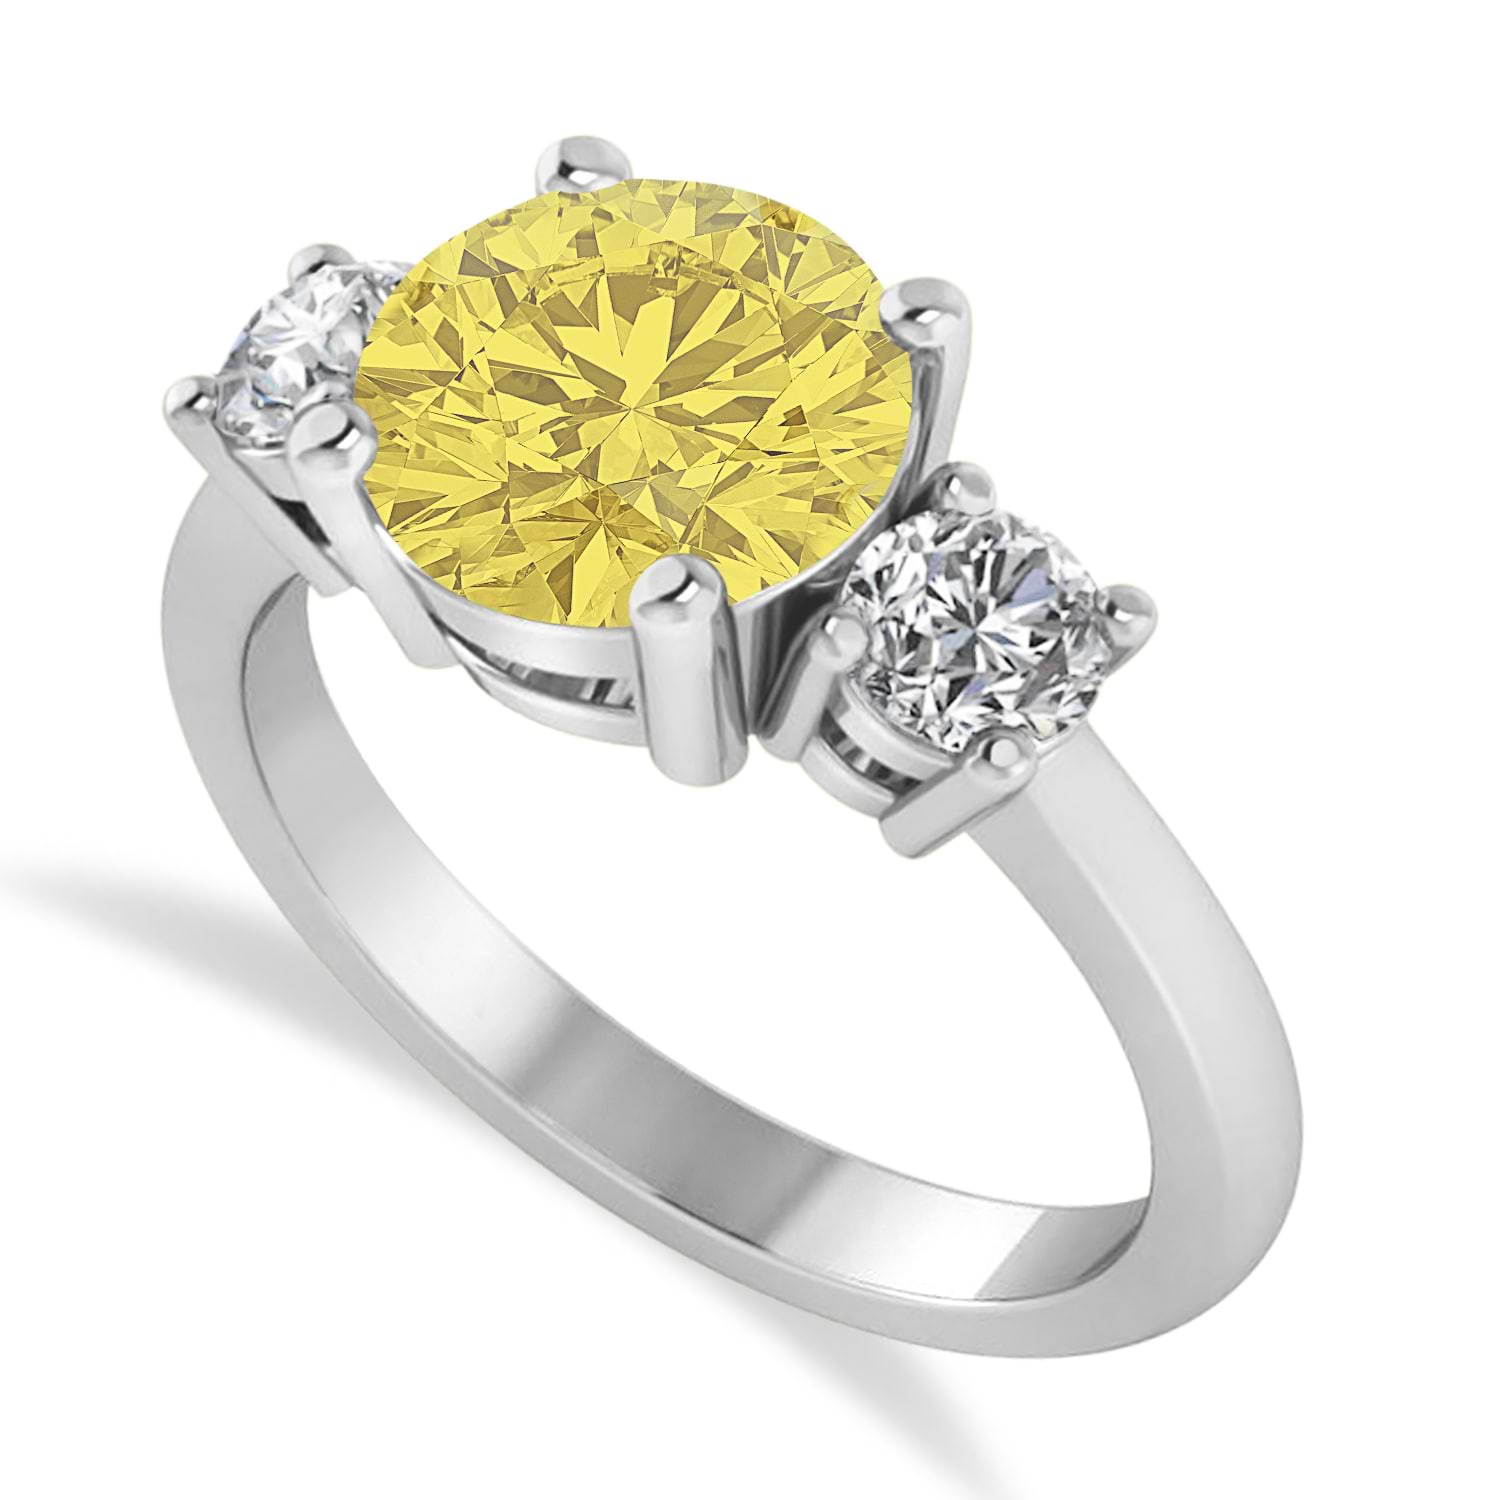 Round 3-Stone Yellow & White Diamond Engagement Ring 14k White Gold (2.50ct)